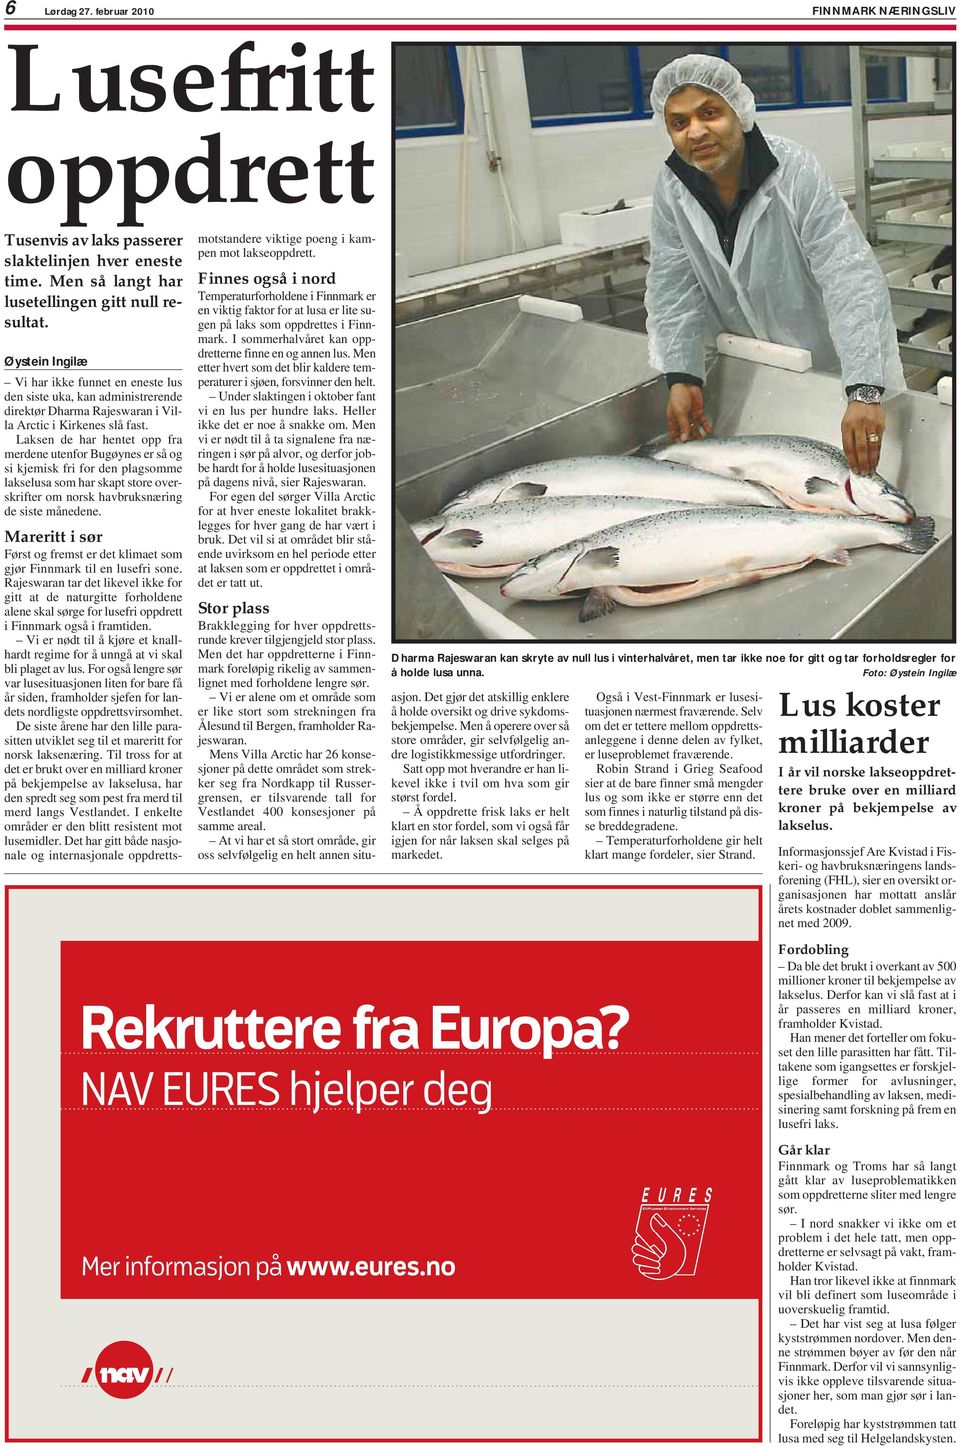 Laksen de har hentet opp fra merdene utenfor Bugøynes er så og si kjemisk fri for den plagsomme lakselusa som har skapt store overskrifter om norsk havbruksnæring de siste månedene.